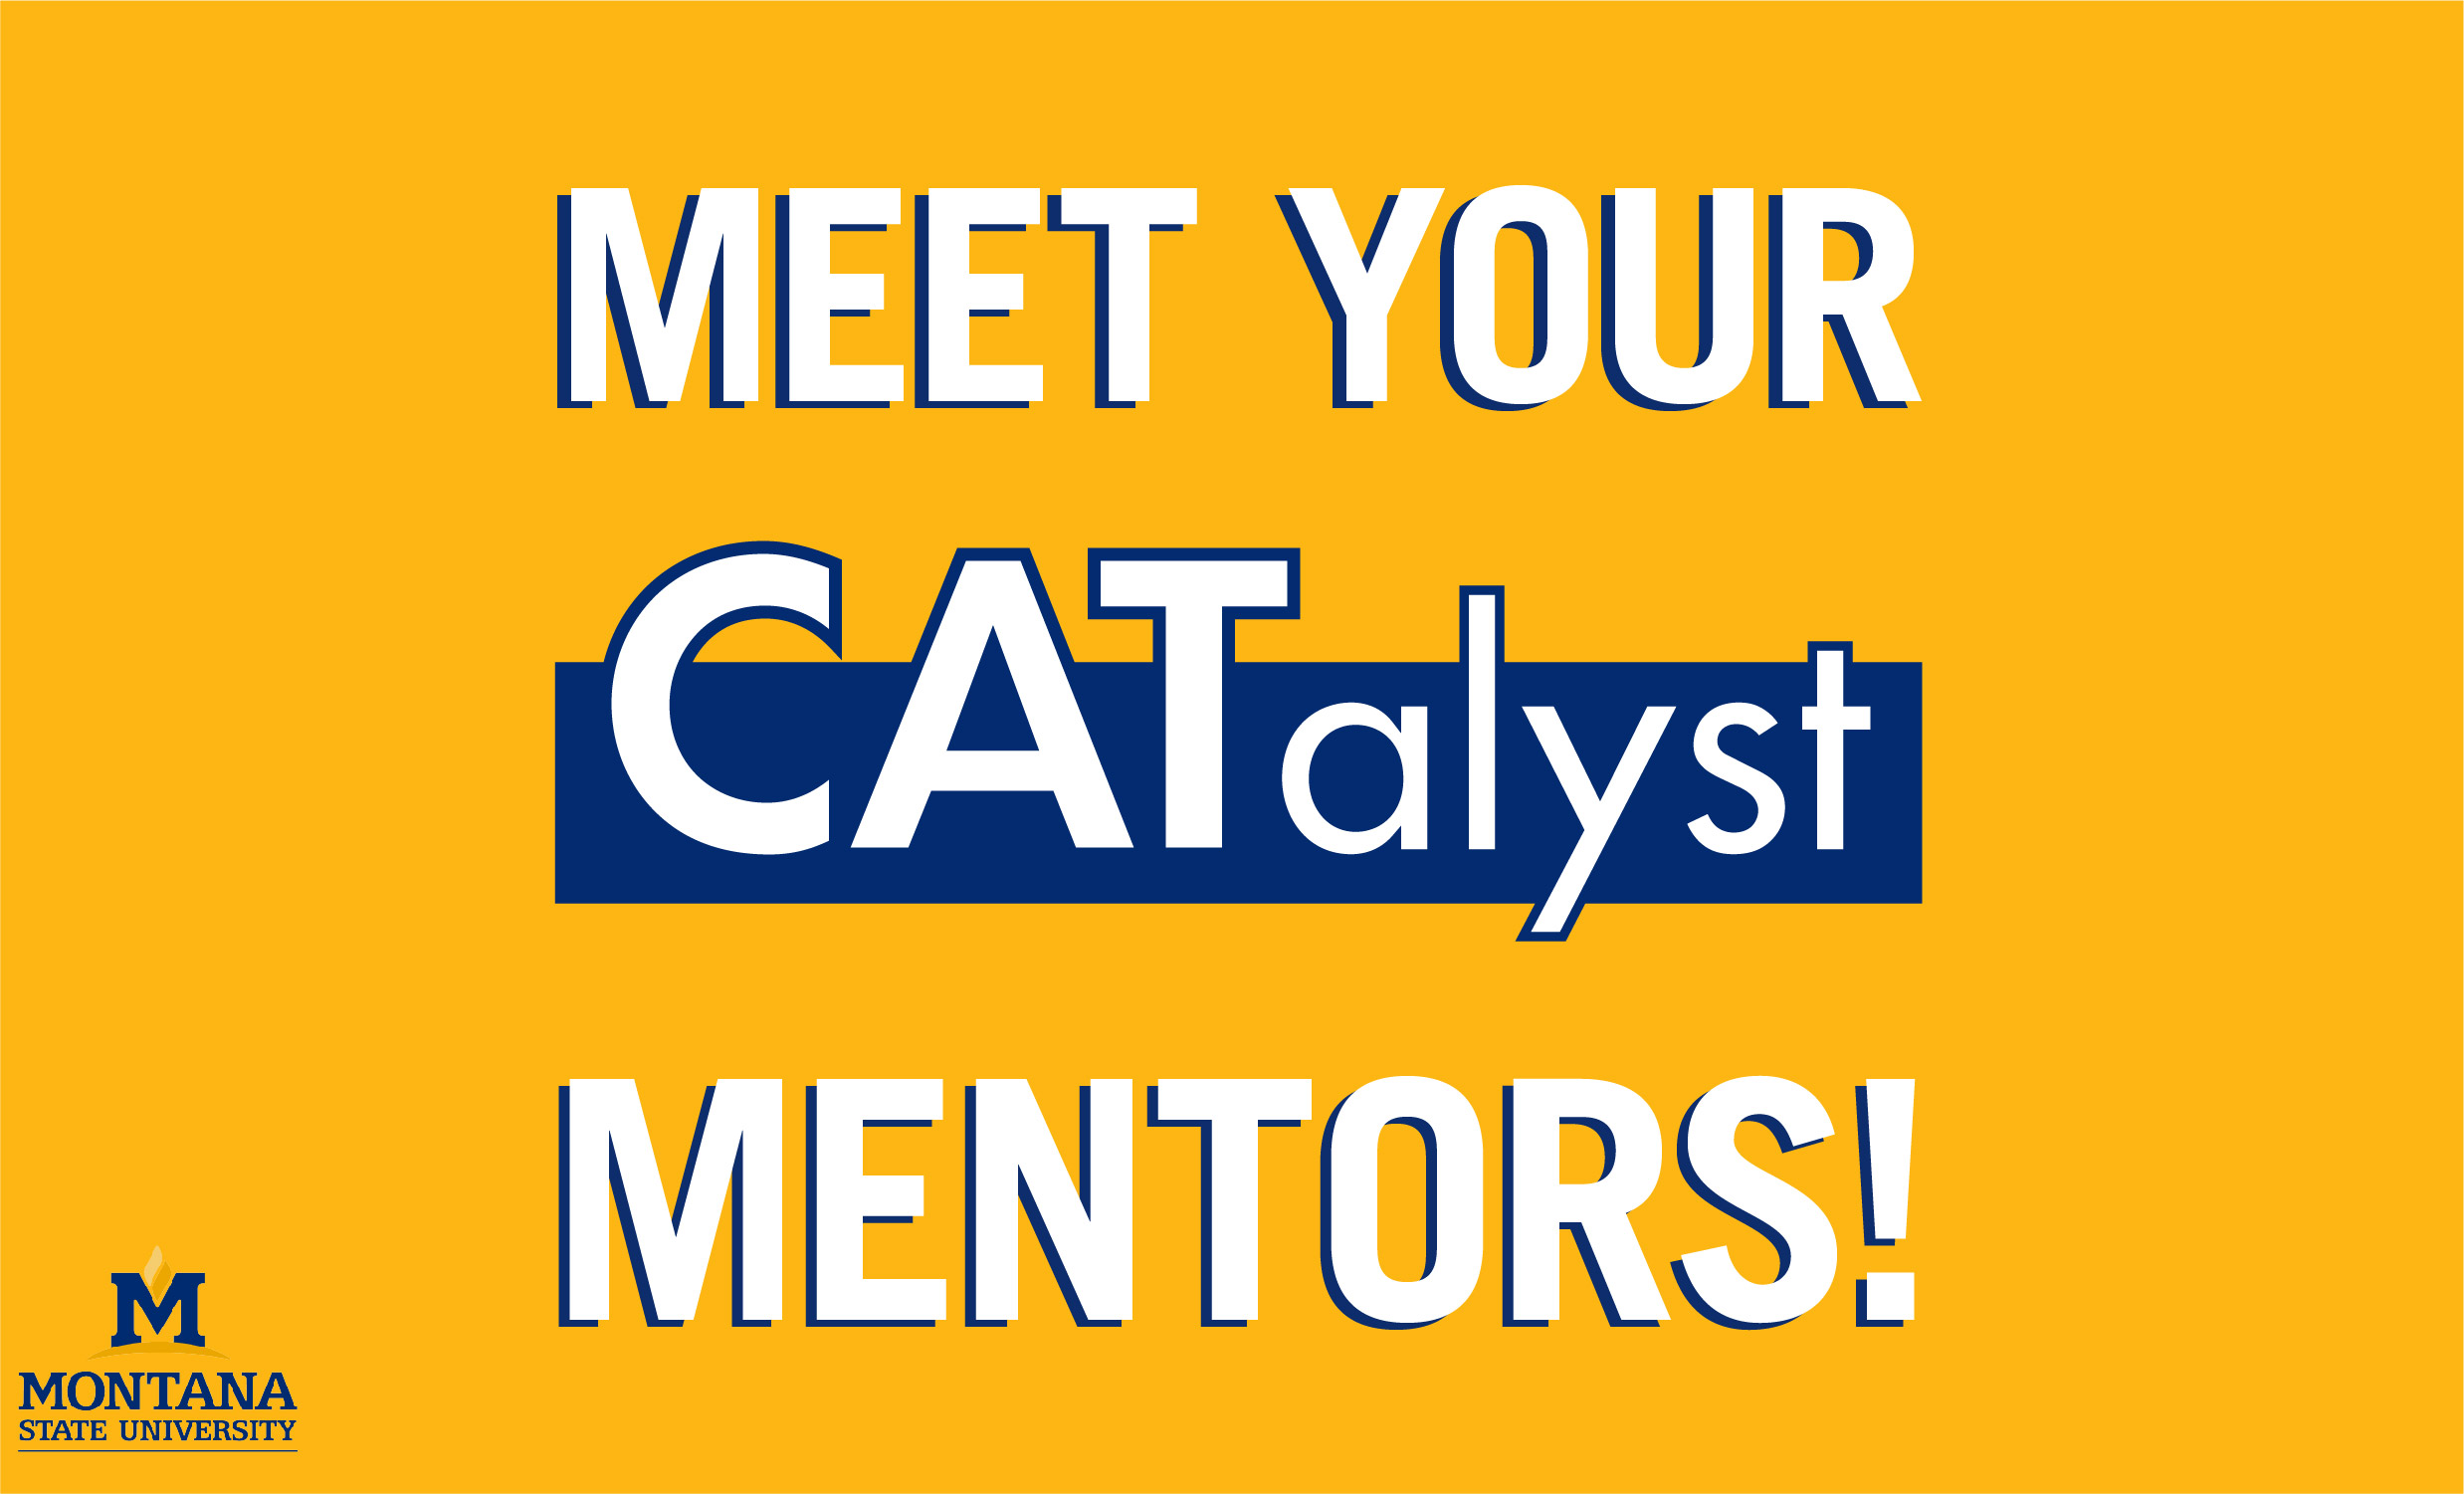 Meet your catalyst mentors